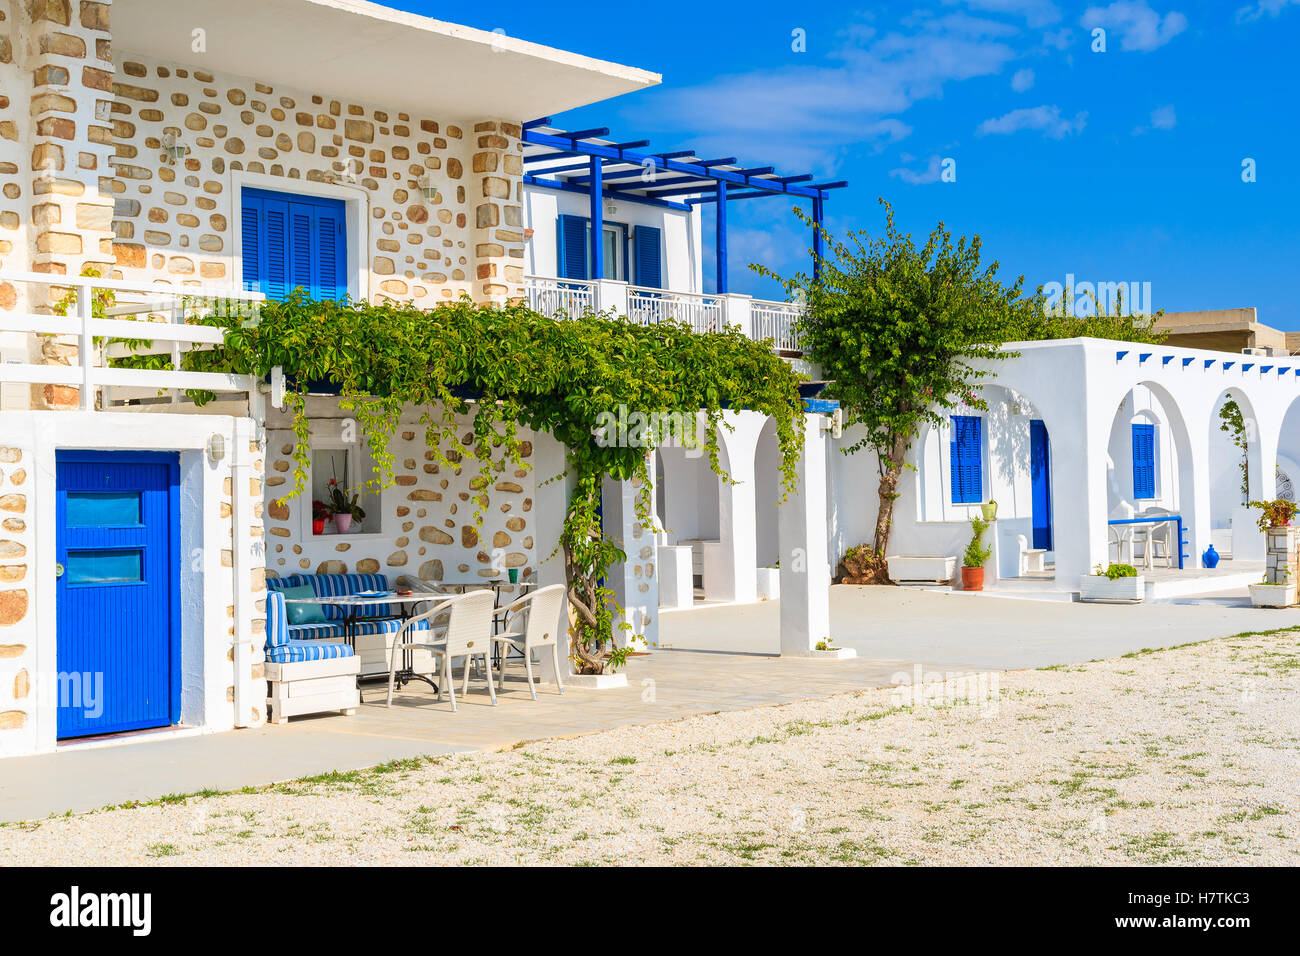 Maisons de vacances en grec typique de Naoussa, l'île de Paros, Grèce Banque D'Images